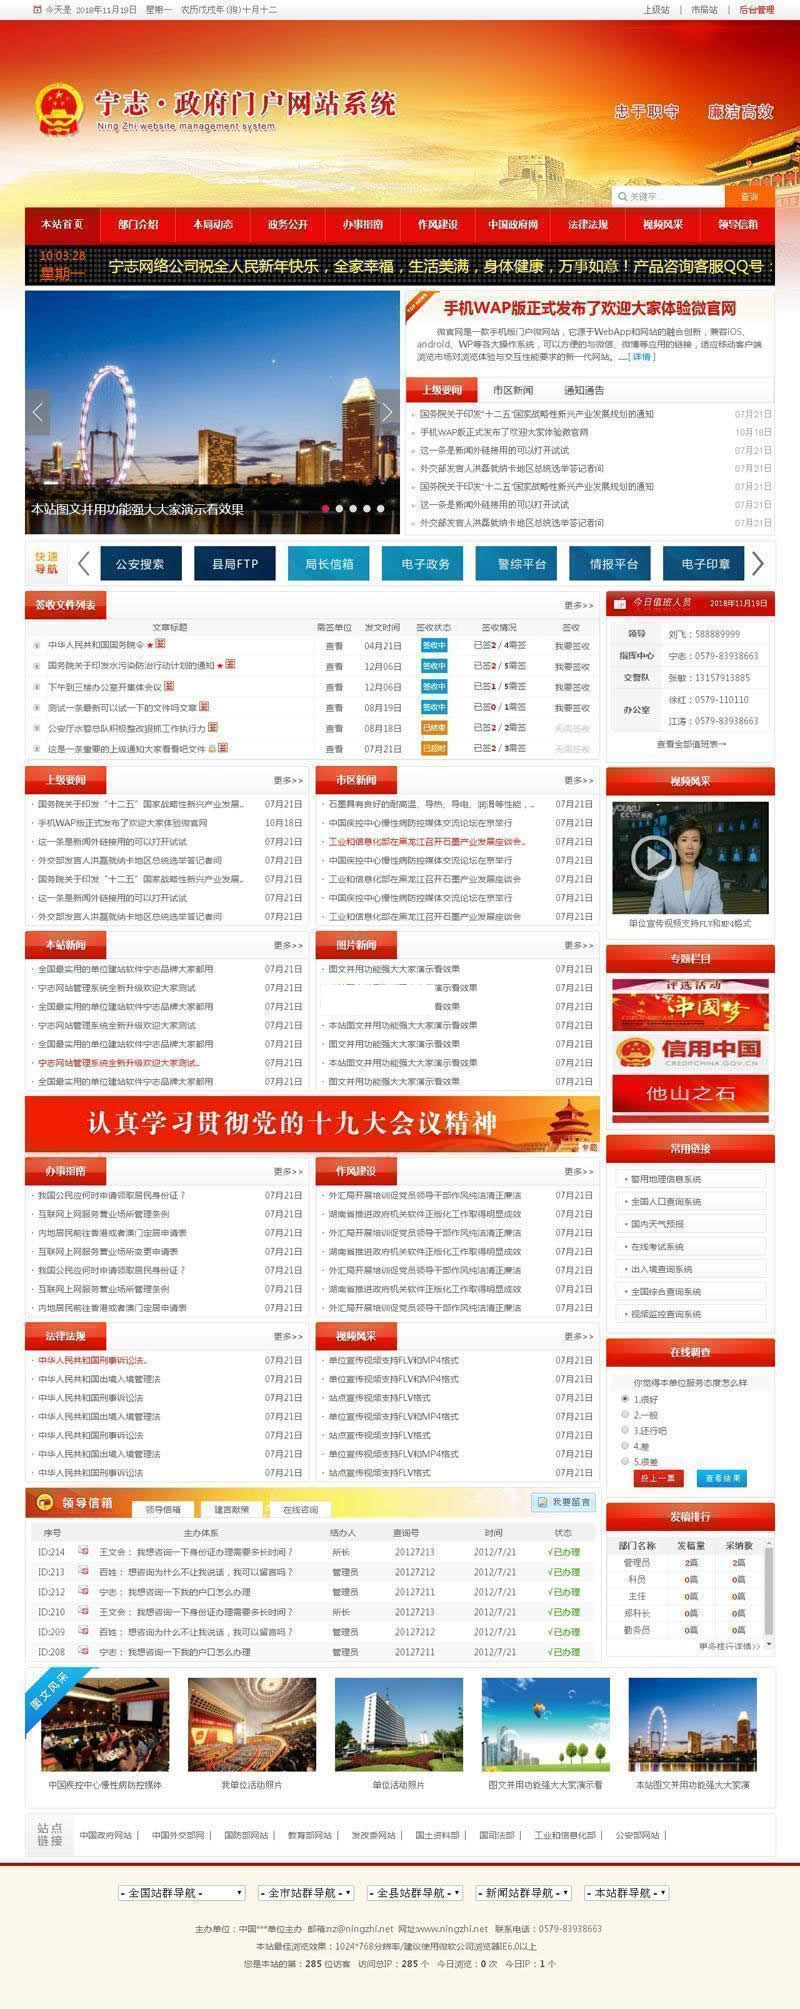 白色当局党建门户网站宽屏版 v2神仙道22.1.19-零度空间